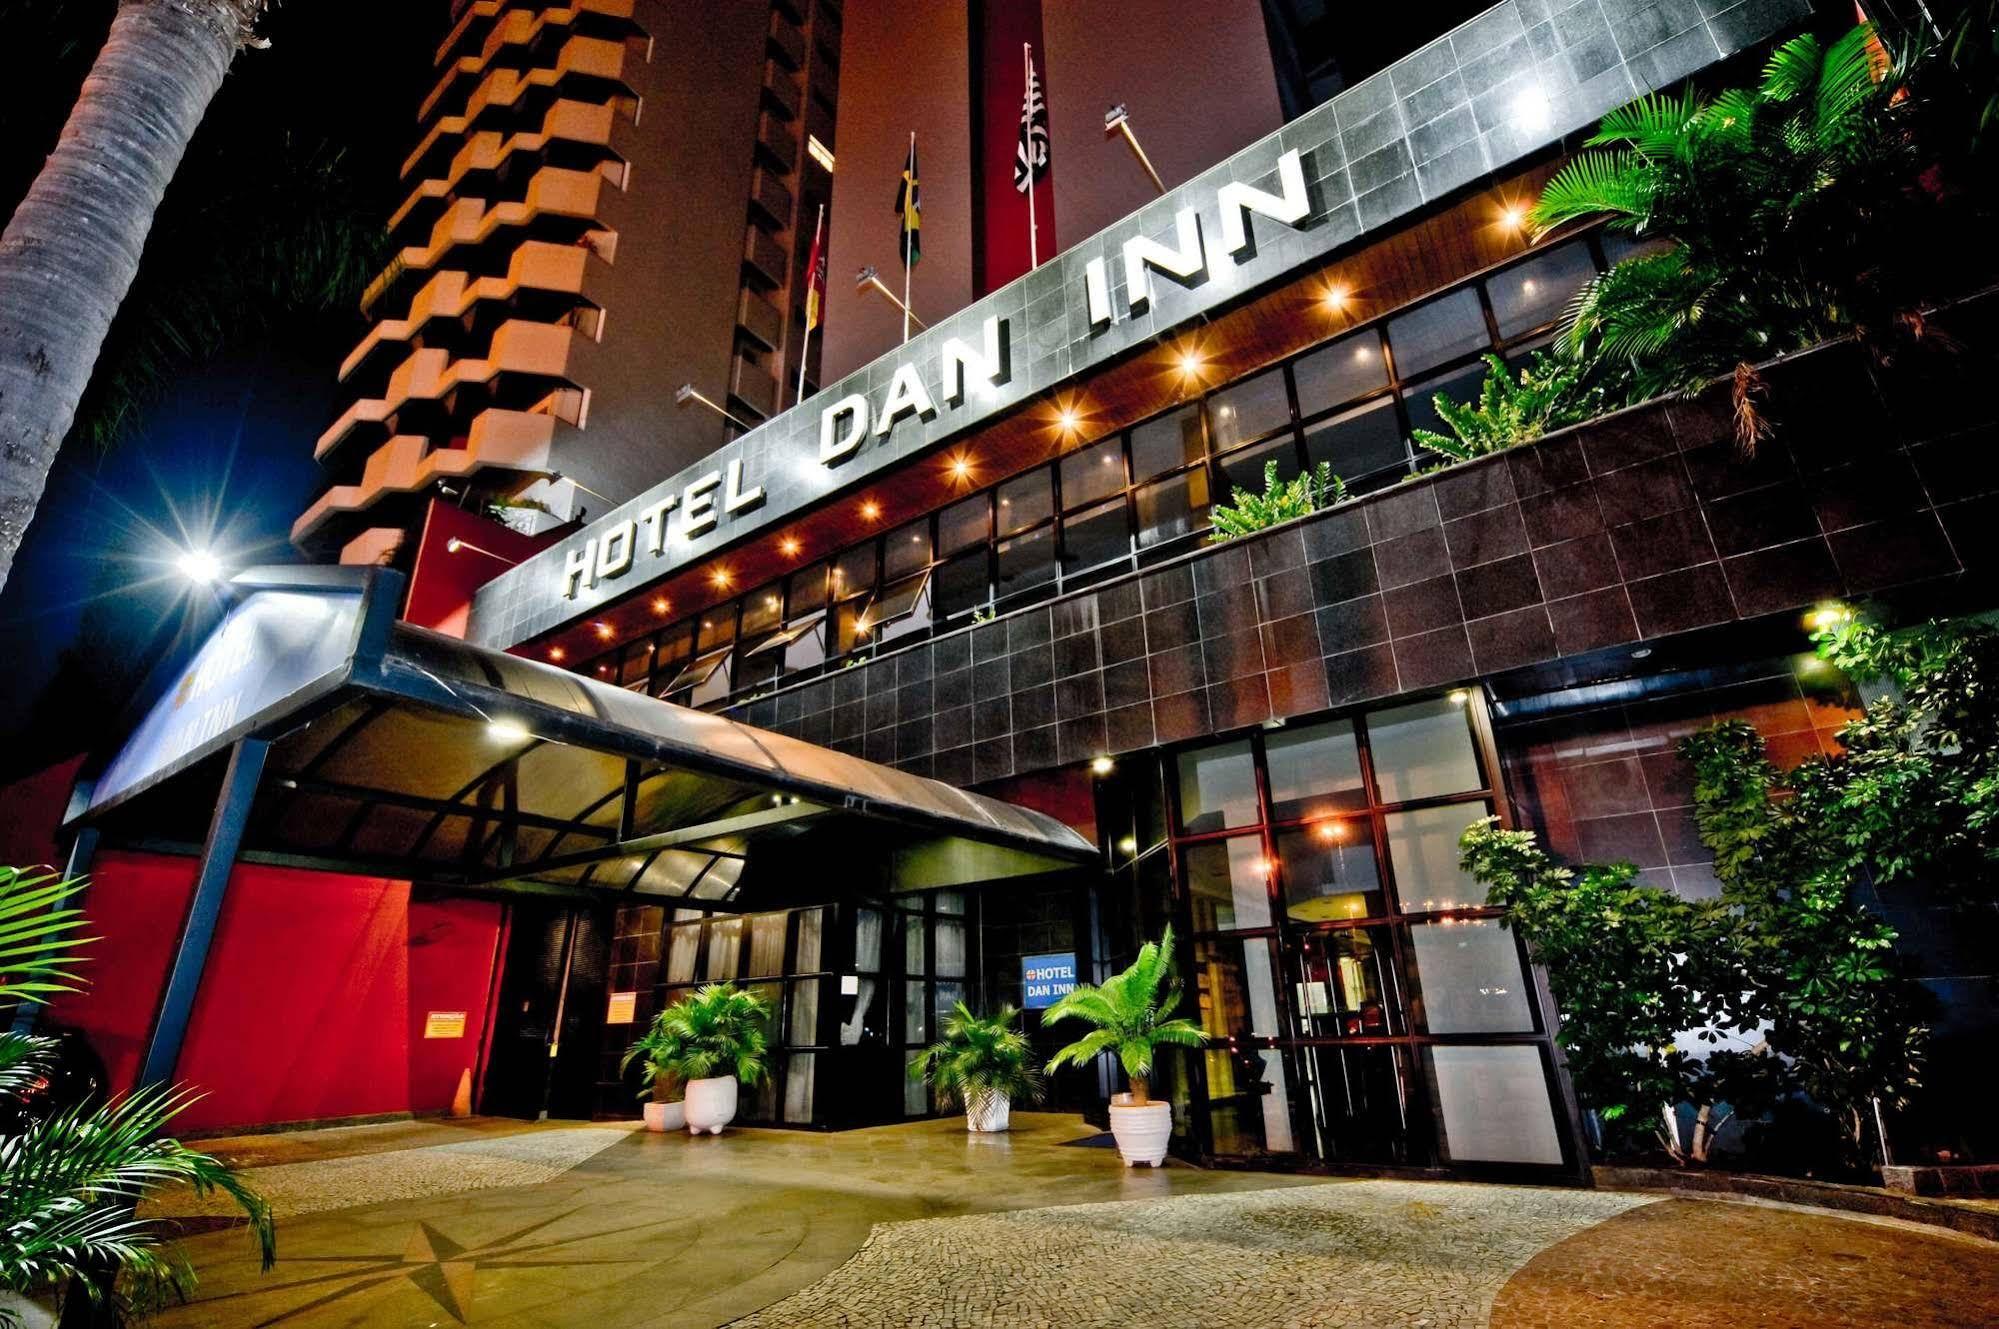 Hotel Dan Inn Sorocaba Luaran gambar